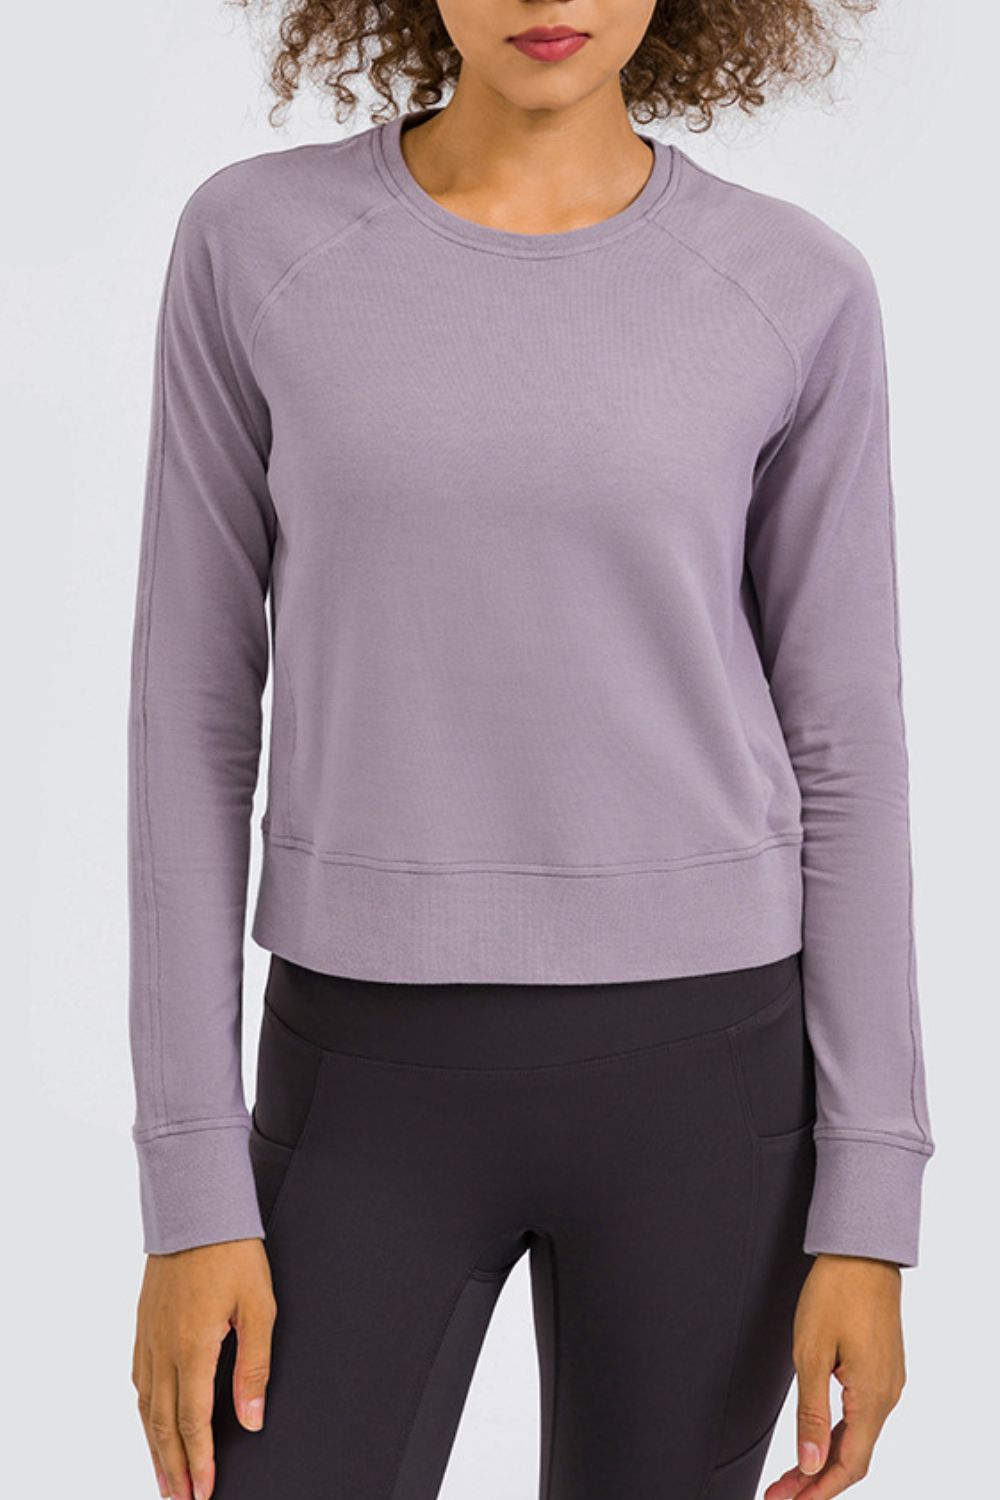 Women's Cozy Raglan Sleeve Sports Top Purple